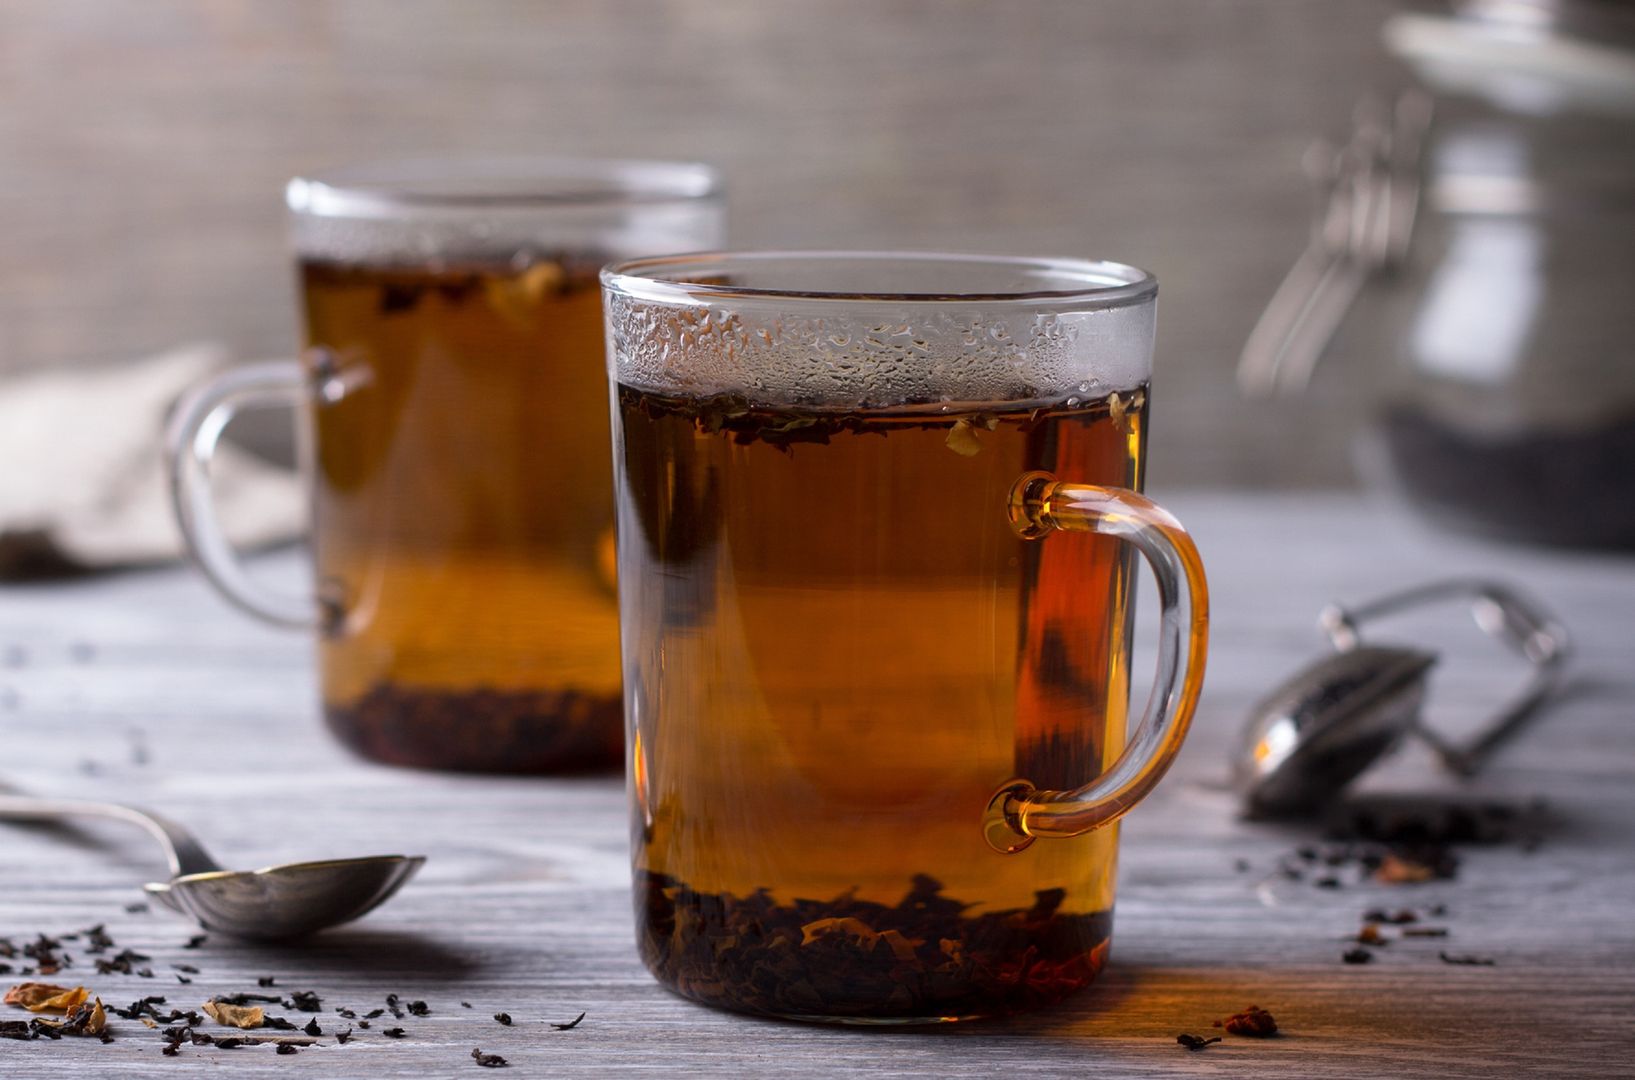 Nie pij takiej herbaty. Zwiększa ryzyko raka aż o 90 proc.